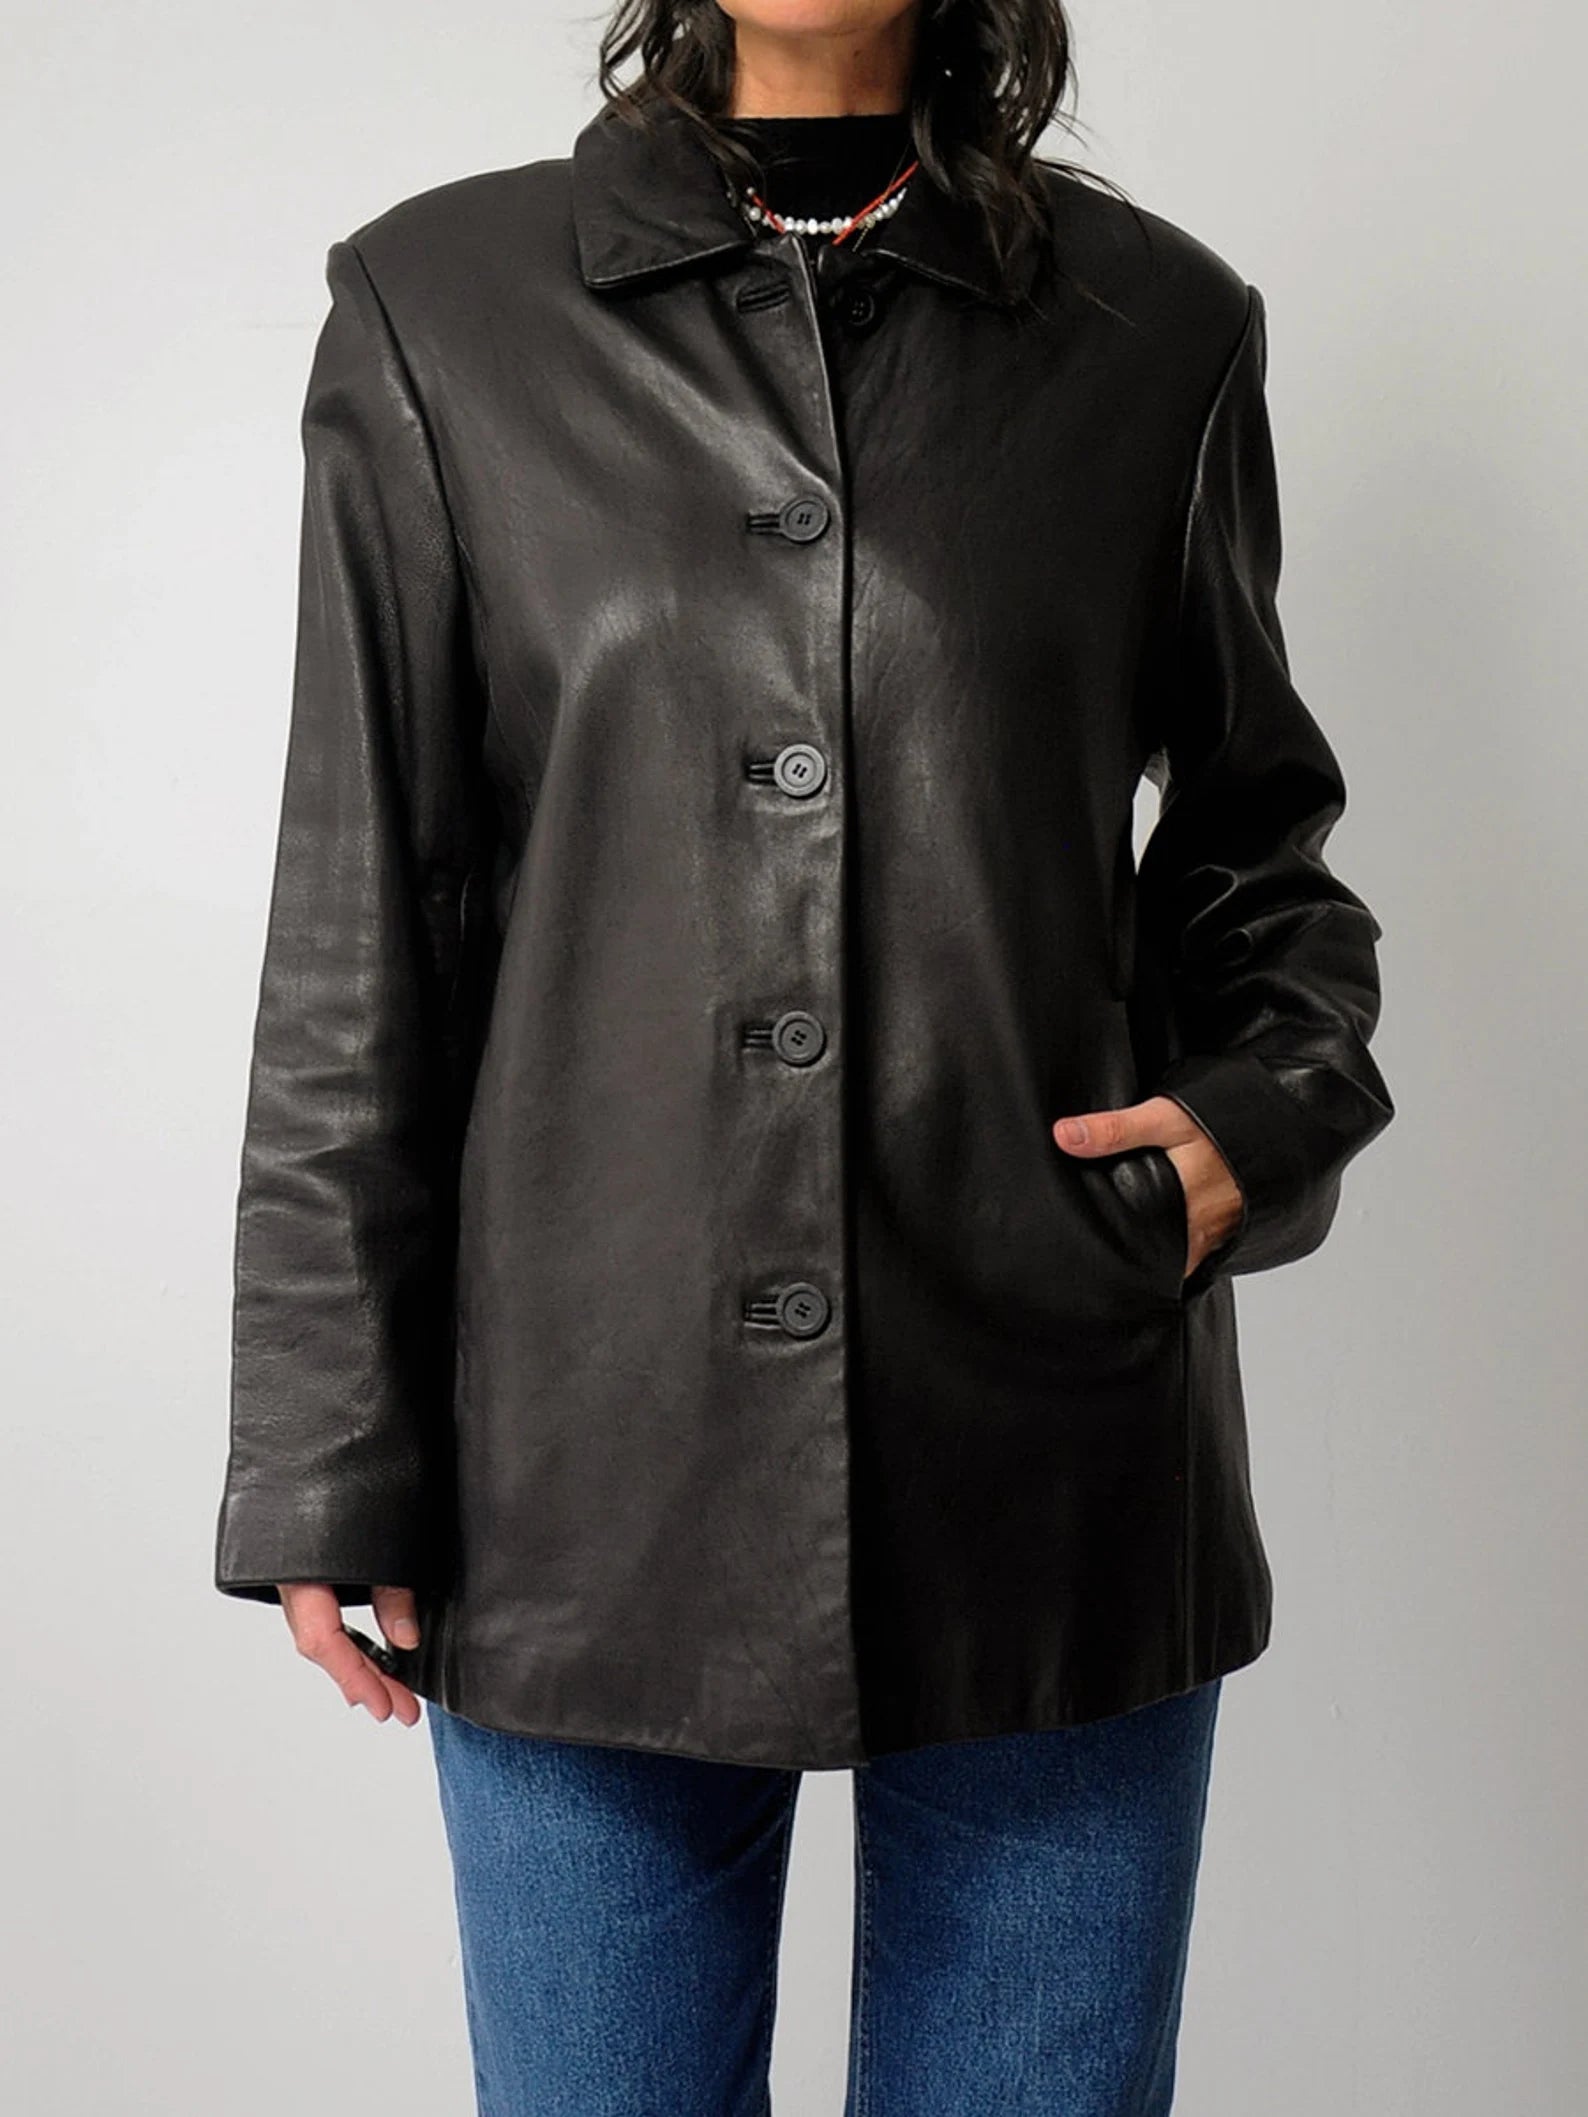 90's Softest Black Leather Jacket